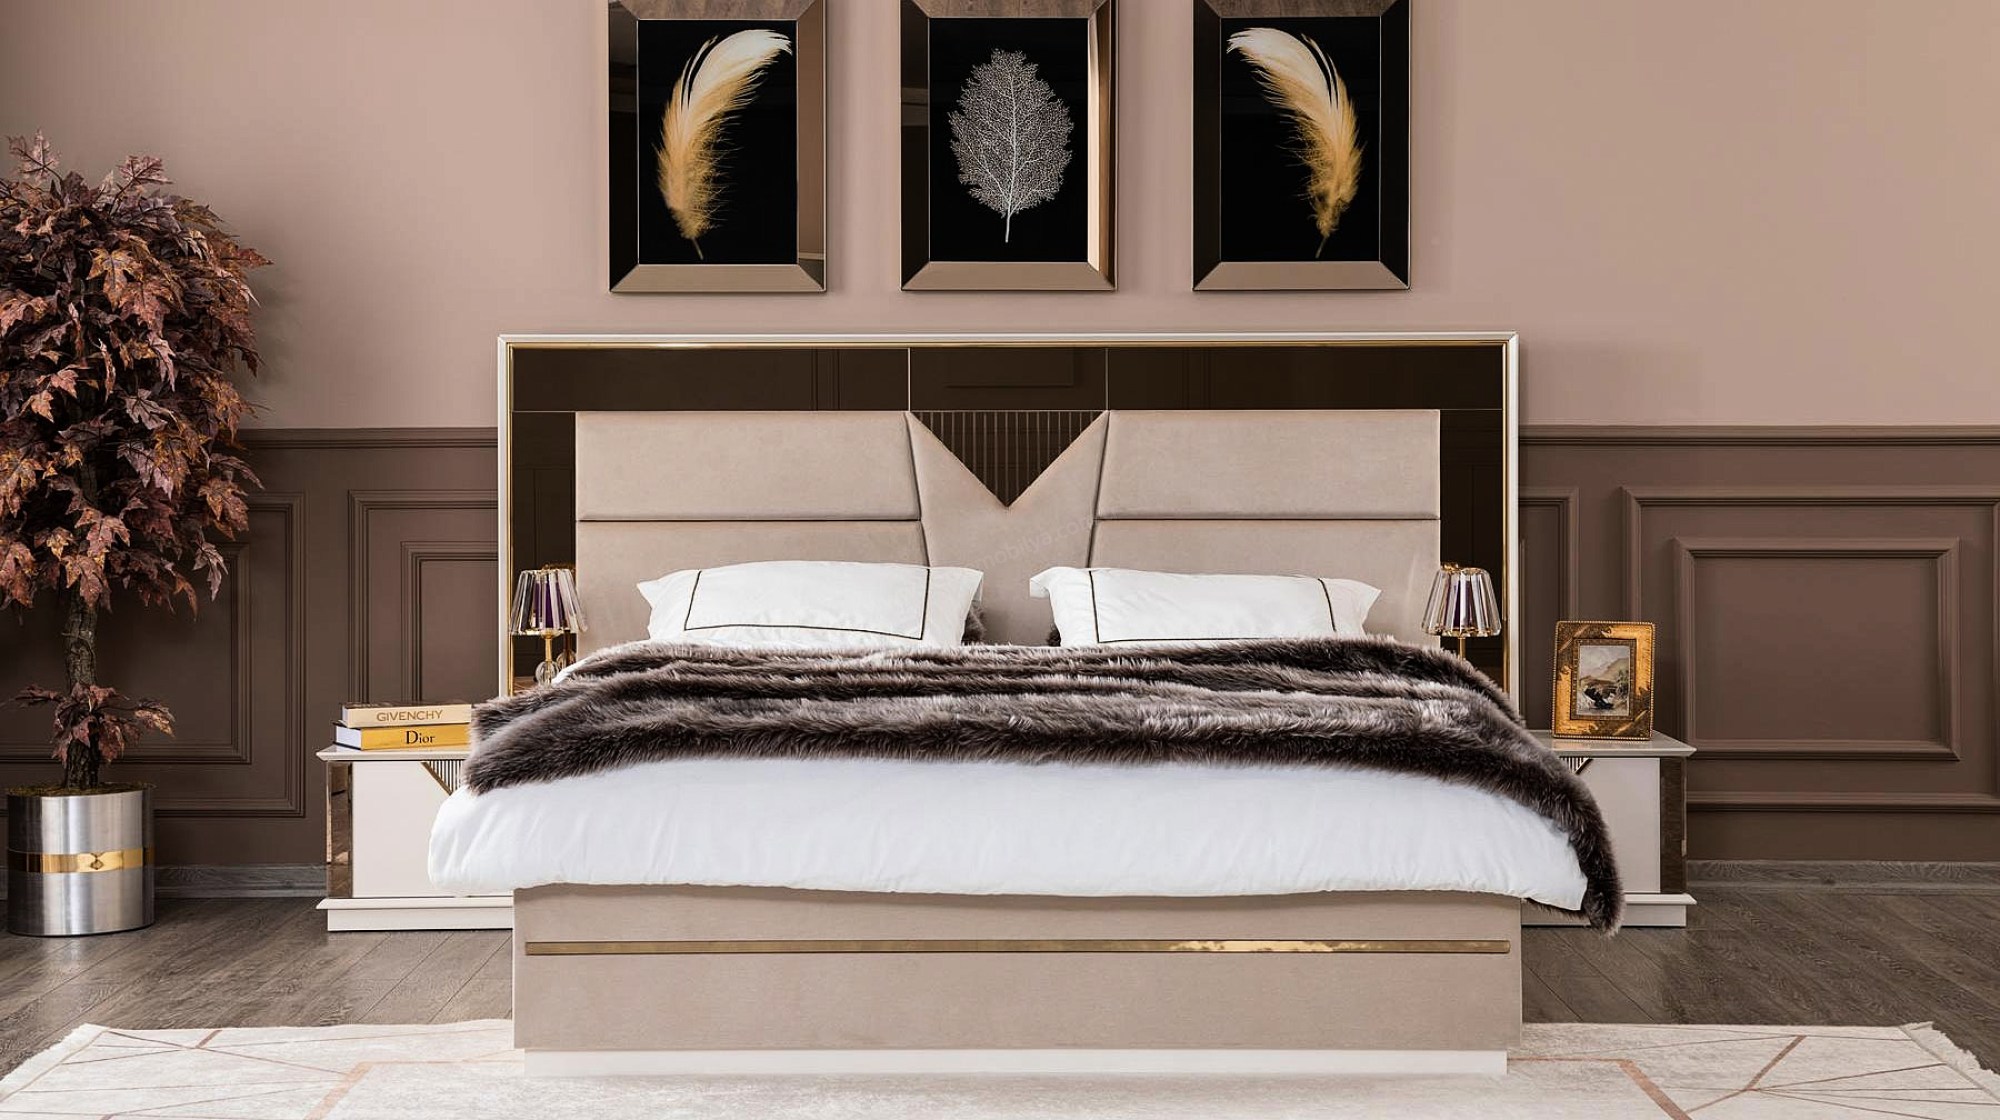 Kontes Luxury Yatak Odası TakımıLuxury Yatak Odası